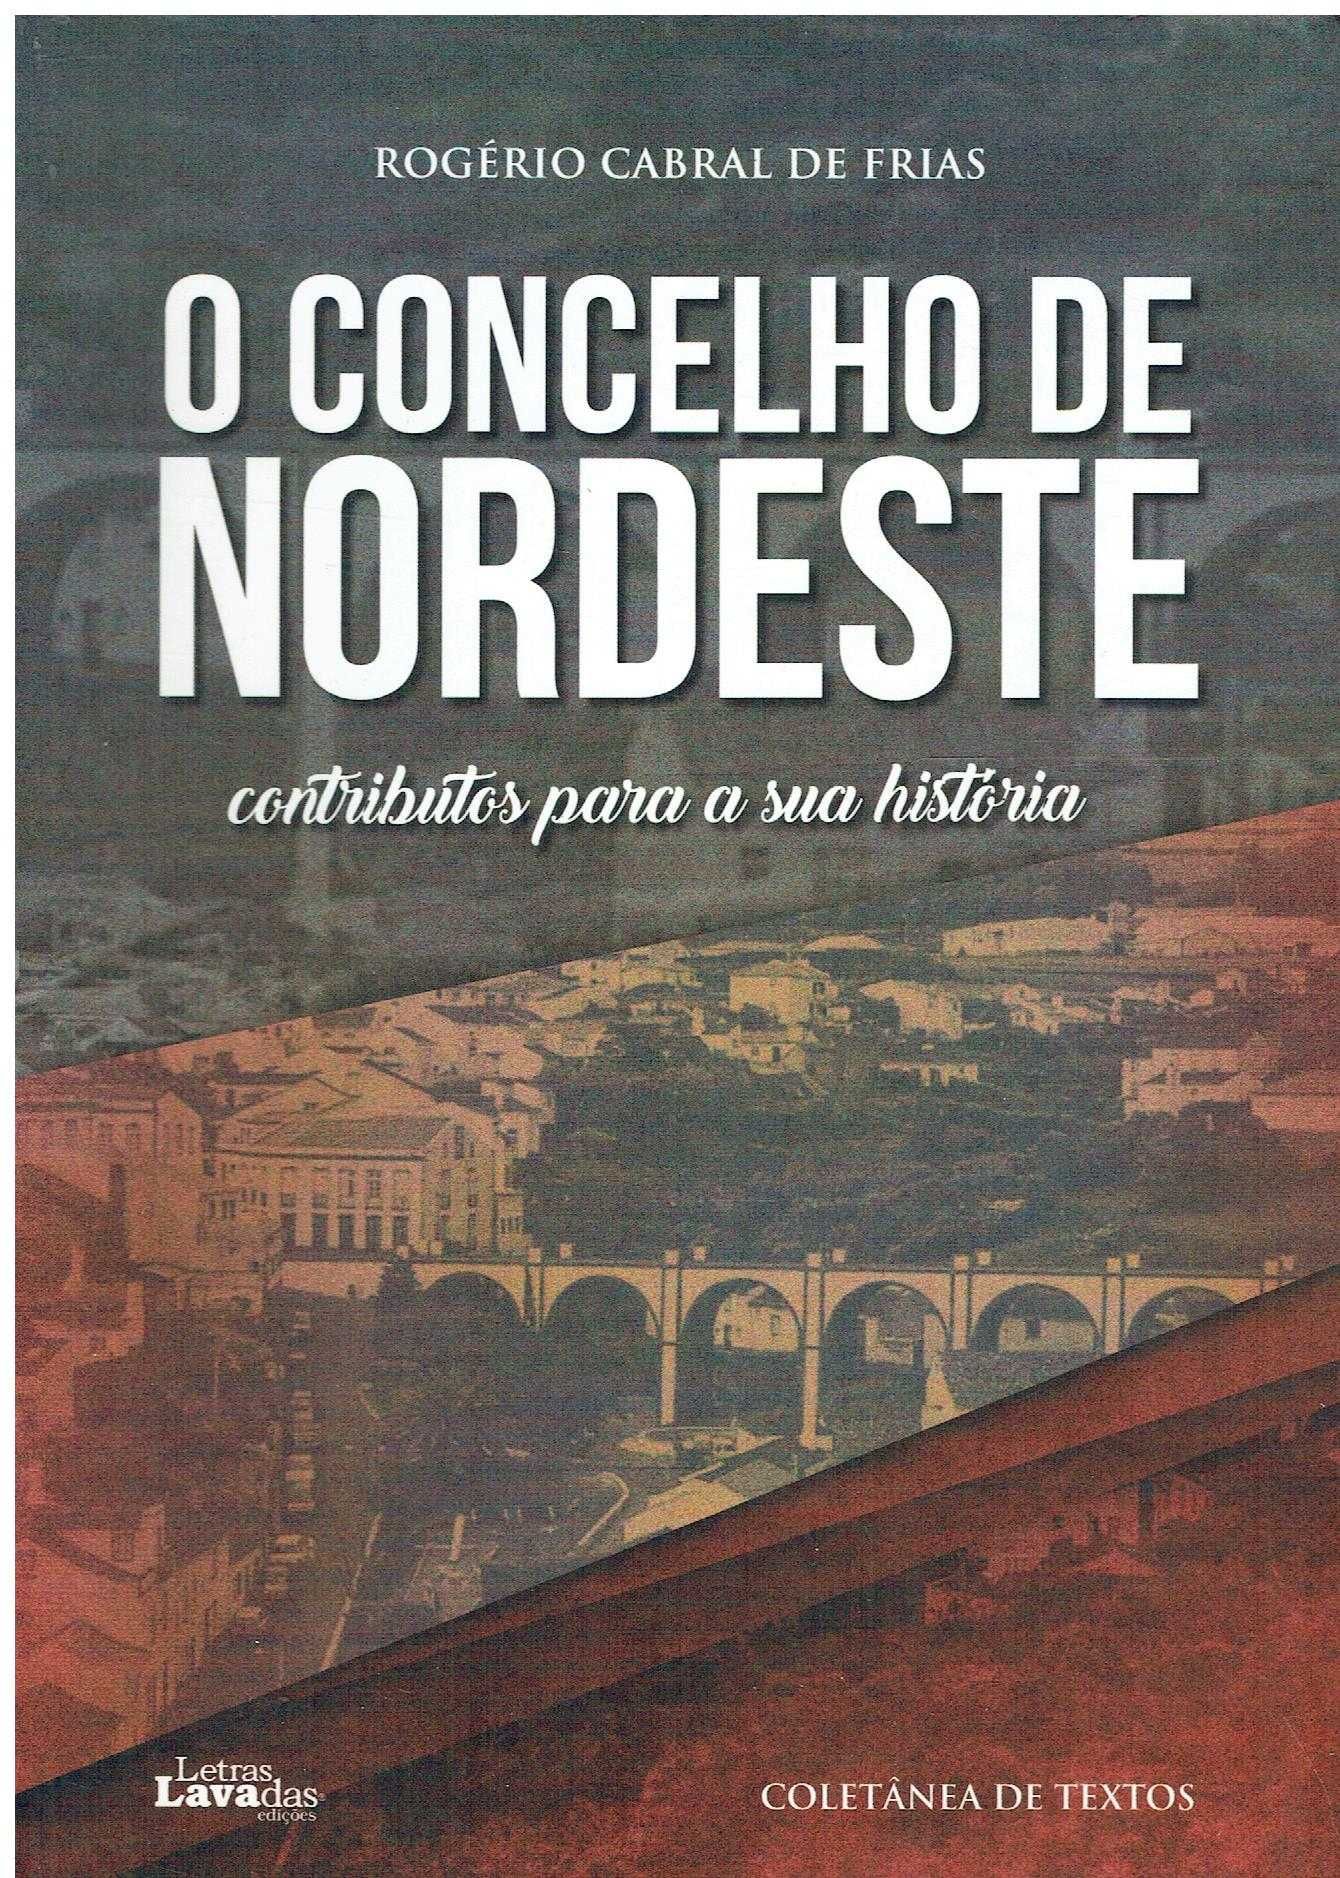 6976

O concelho de Nordeste : contributos para a sua história